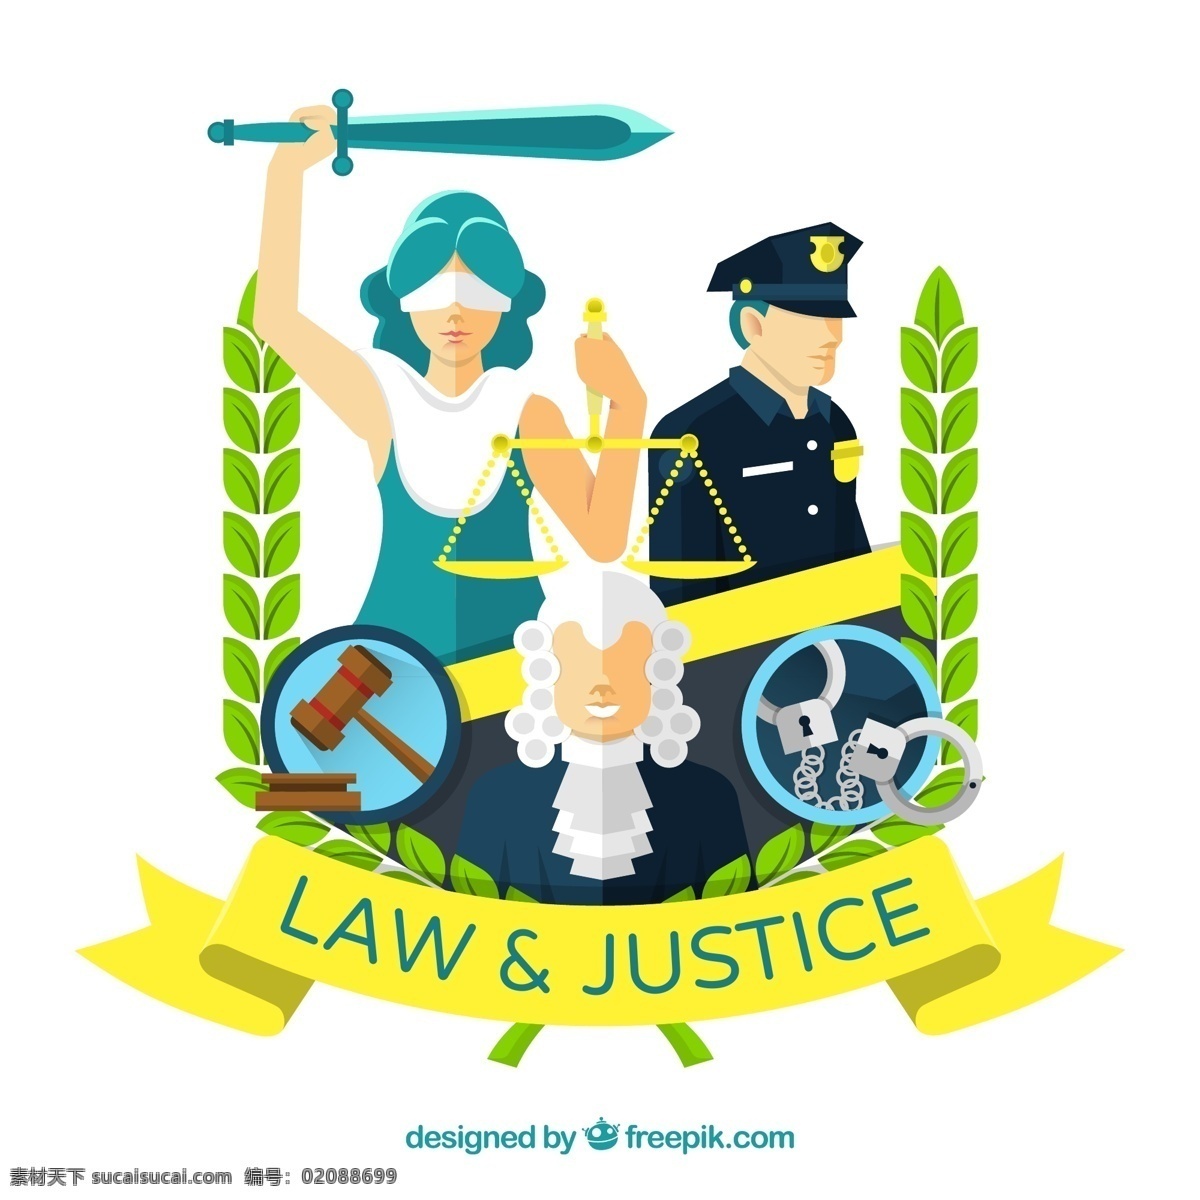 创意 无 表情 法律 人物 无表情 正义女神 警察 法官 公检法 法槌 手铐 公正 正义 天枰 利剑 动漫动画 动漫人物